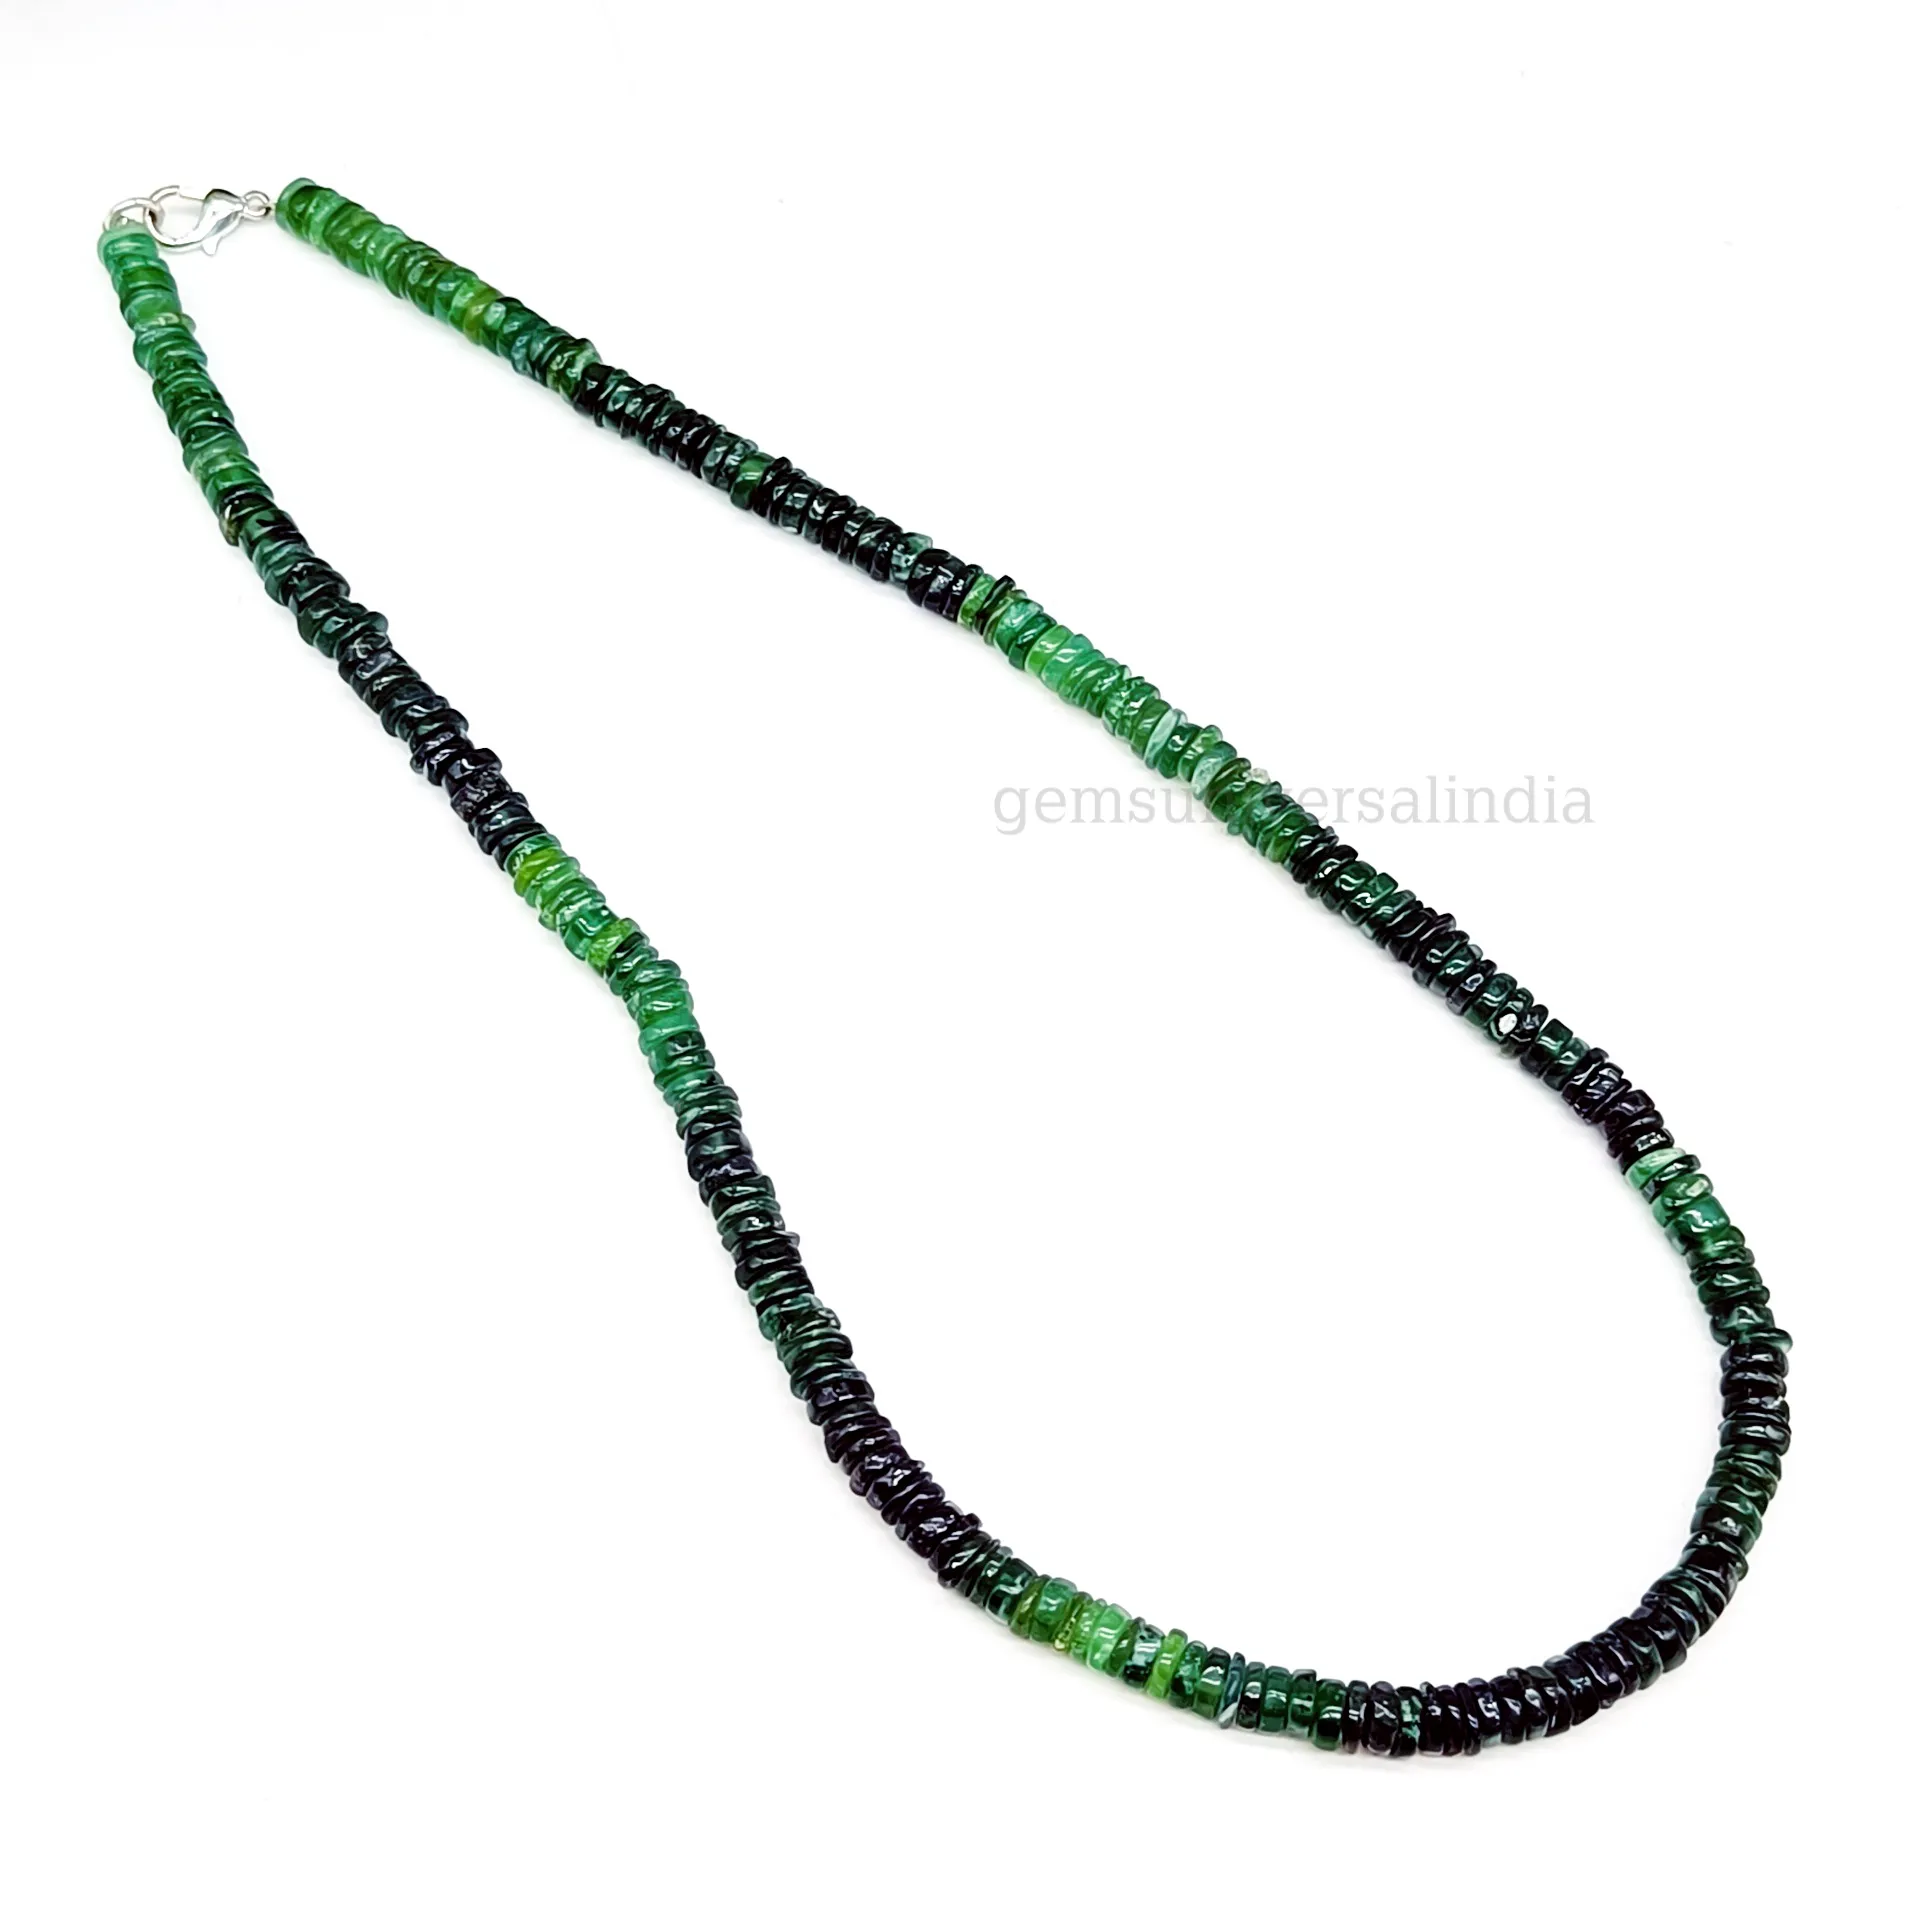 Collier de perles de pierres précieuses en forme de roue lisse en quartz vert fraise, collier de perles avec fermoir en argent sterling 925, perles de quartz